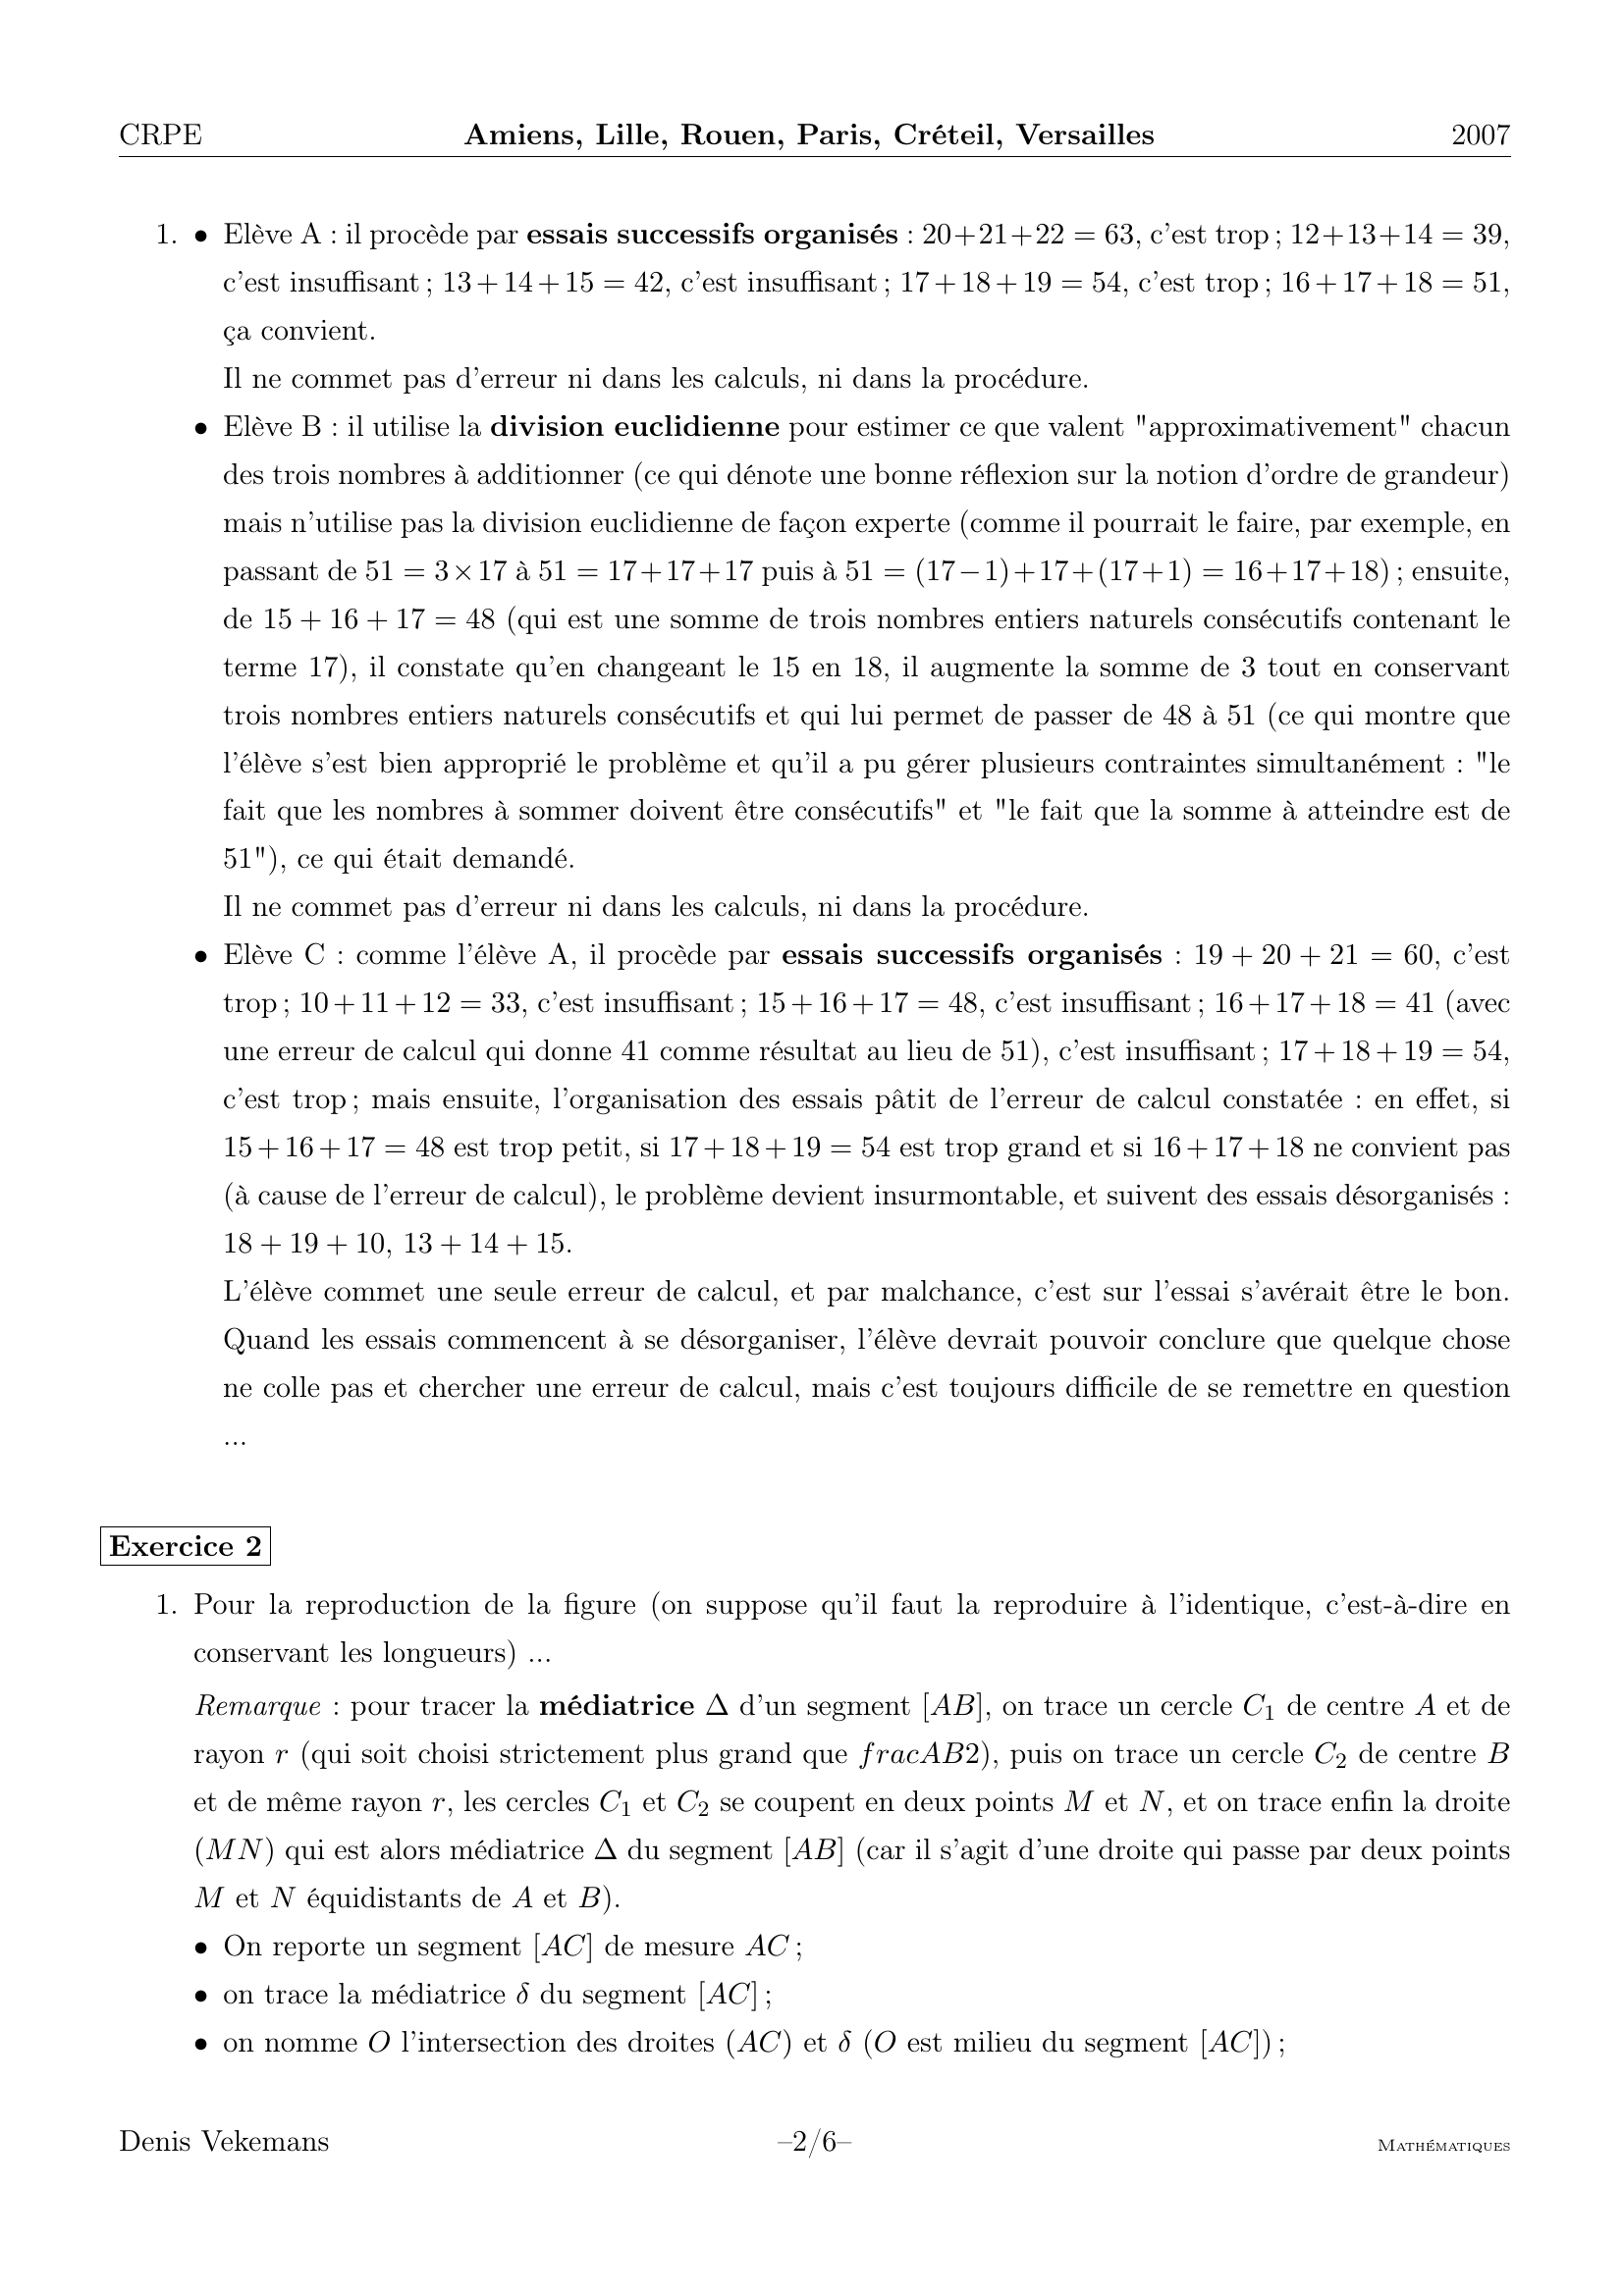 Prévisualisation du document Correction de l'épreuve de mathématiques du CRPE 2007
du sujet d'Amiens, Lille, Rouen, Paris, Créteil,
Versailles

Denis Vekemans

*

Exercice 1
1.